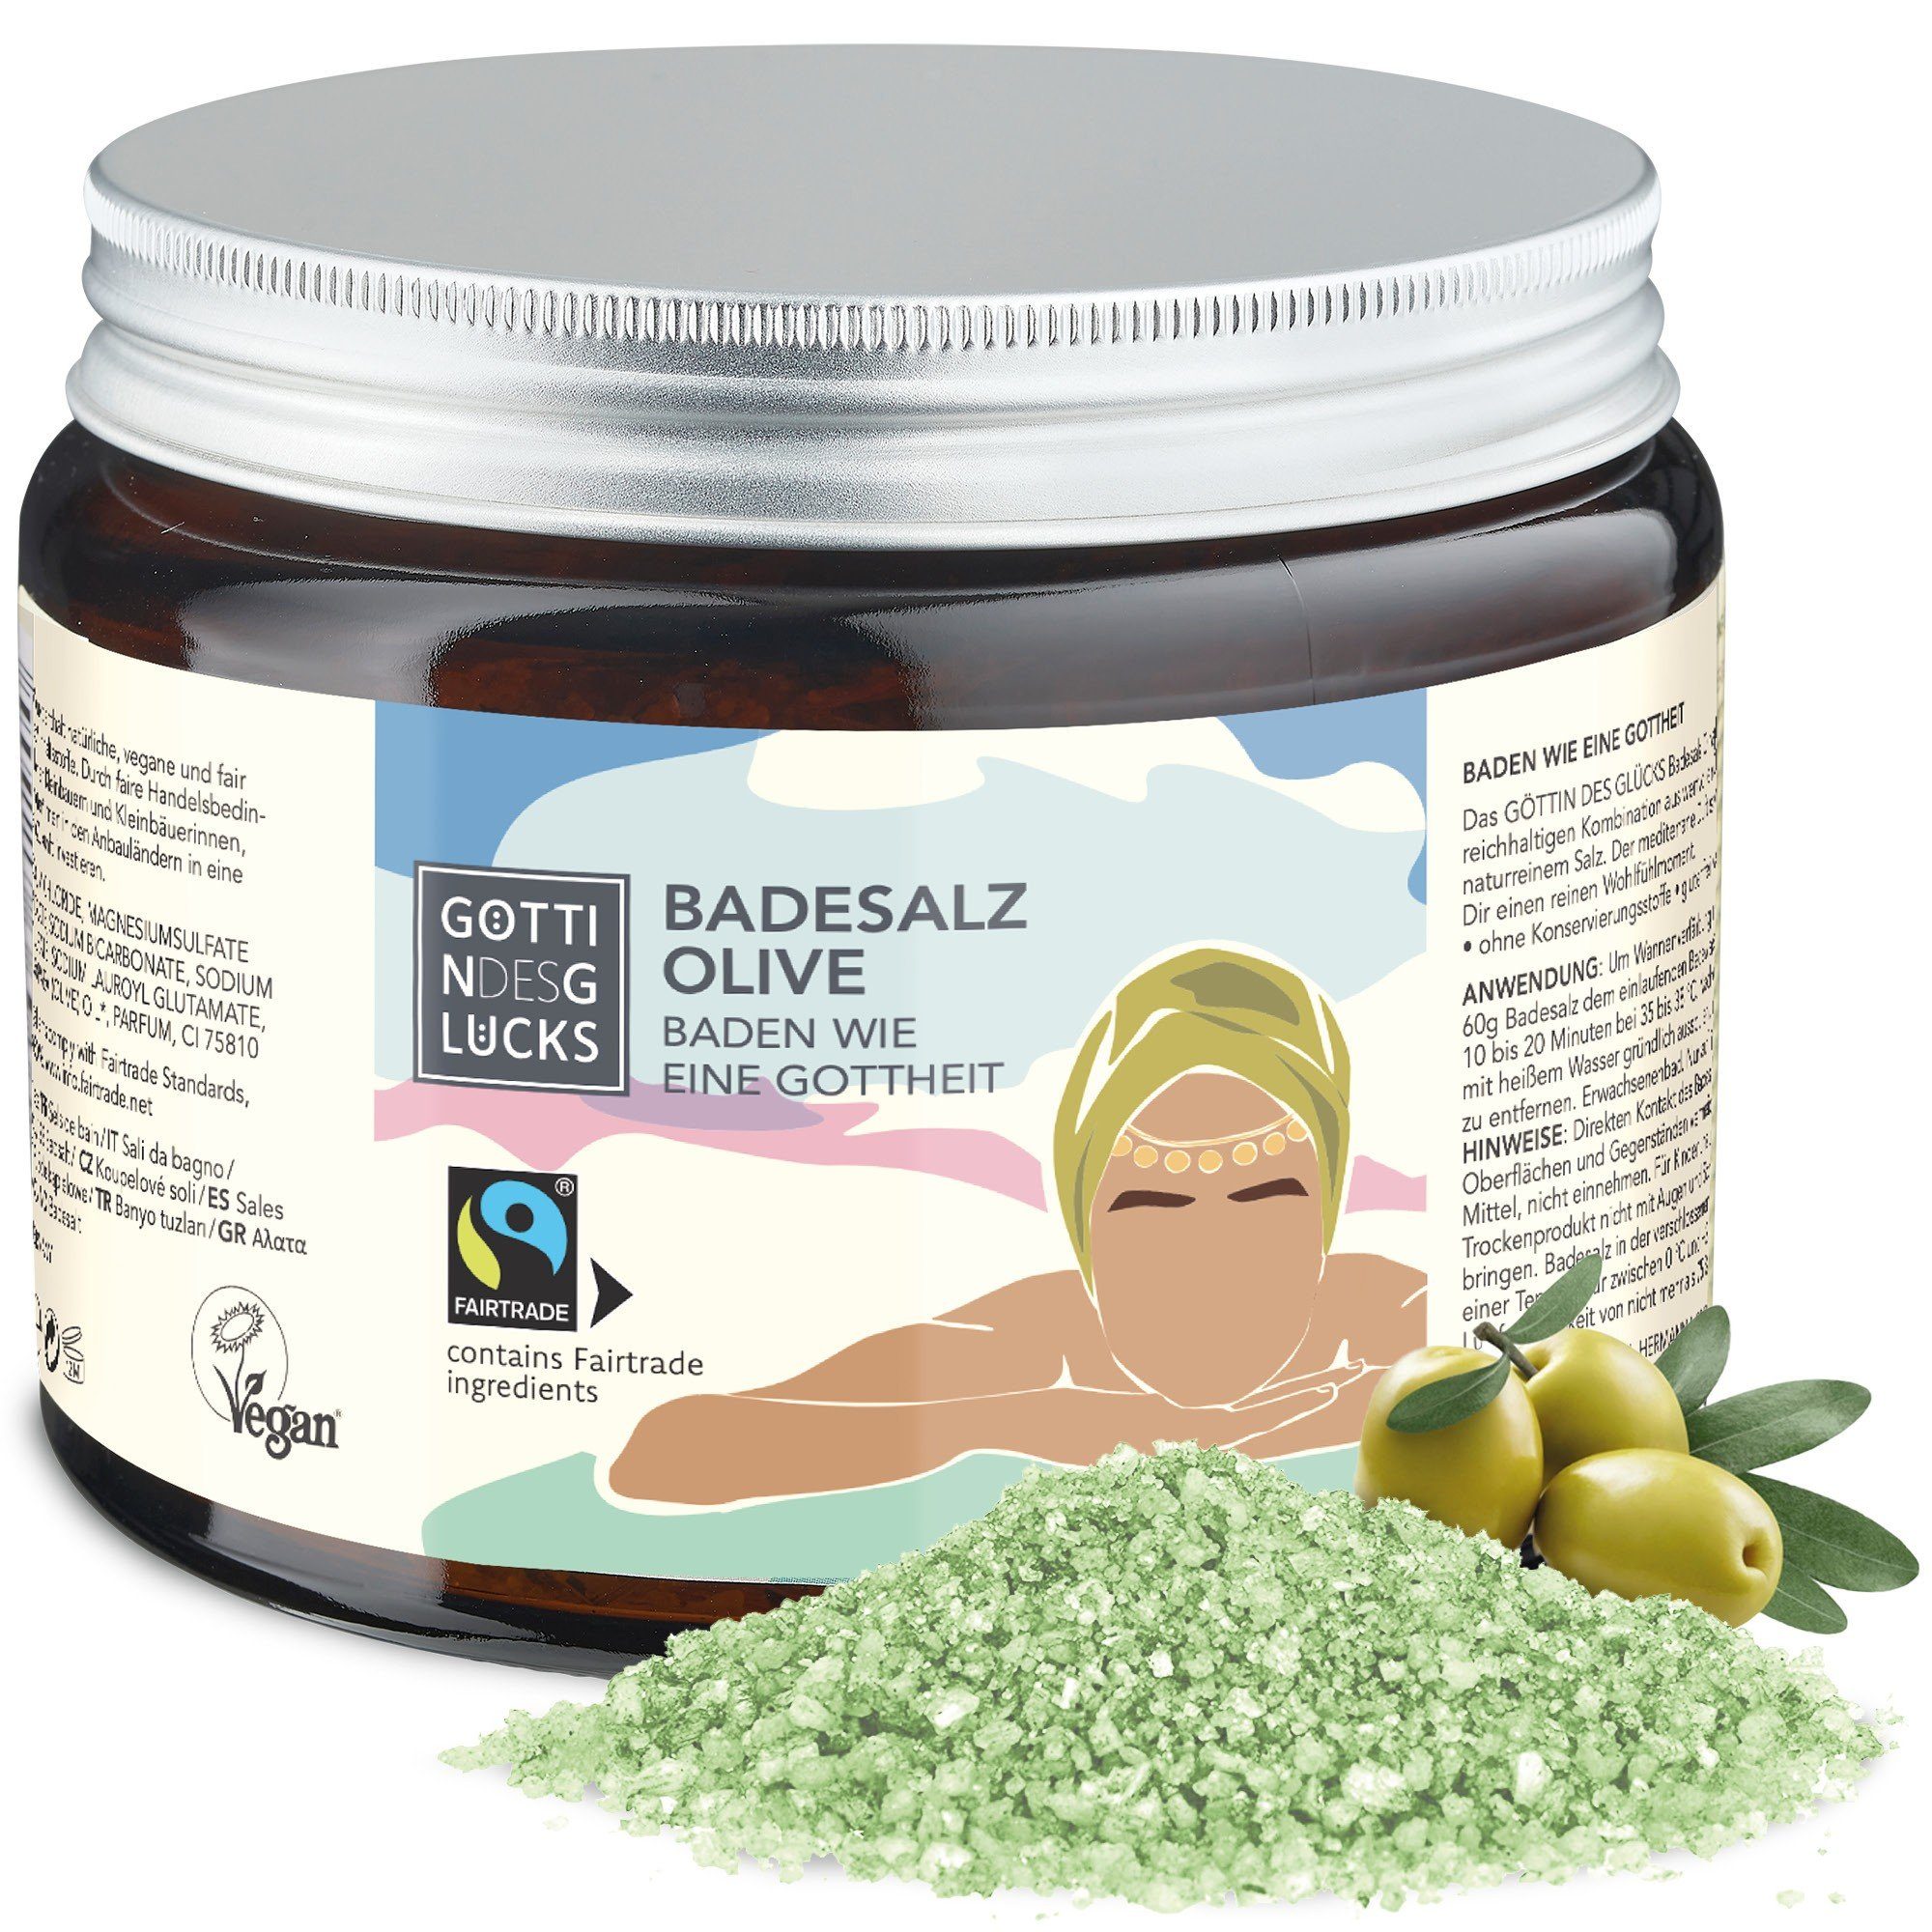 Göttin des Glücks Badesalz GÖTTIN DES GLÜCKS Badesalz Olive 450 g, für ein intensives Badeerlebnis, 1-tlg., mit fair gehandelten Inhaltsstoffen